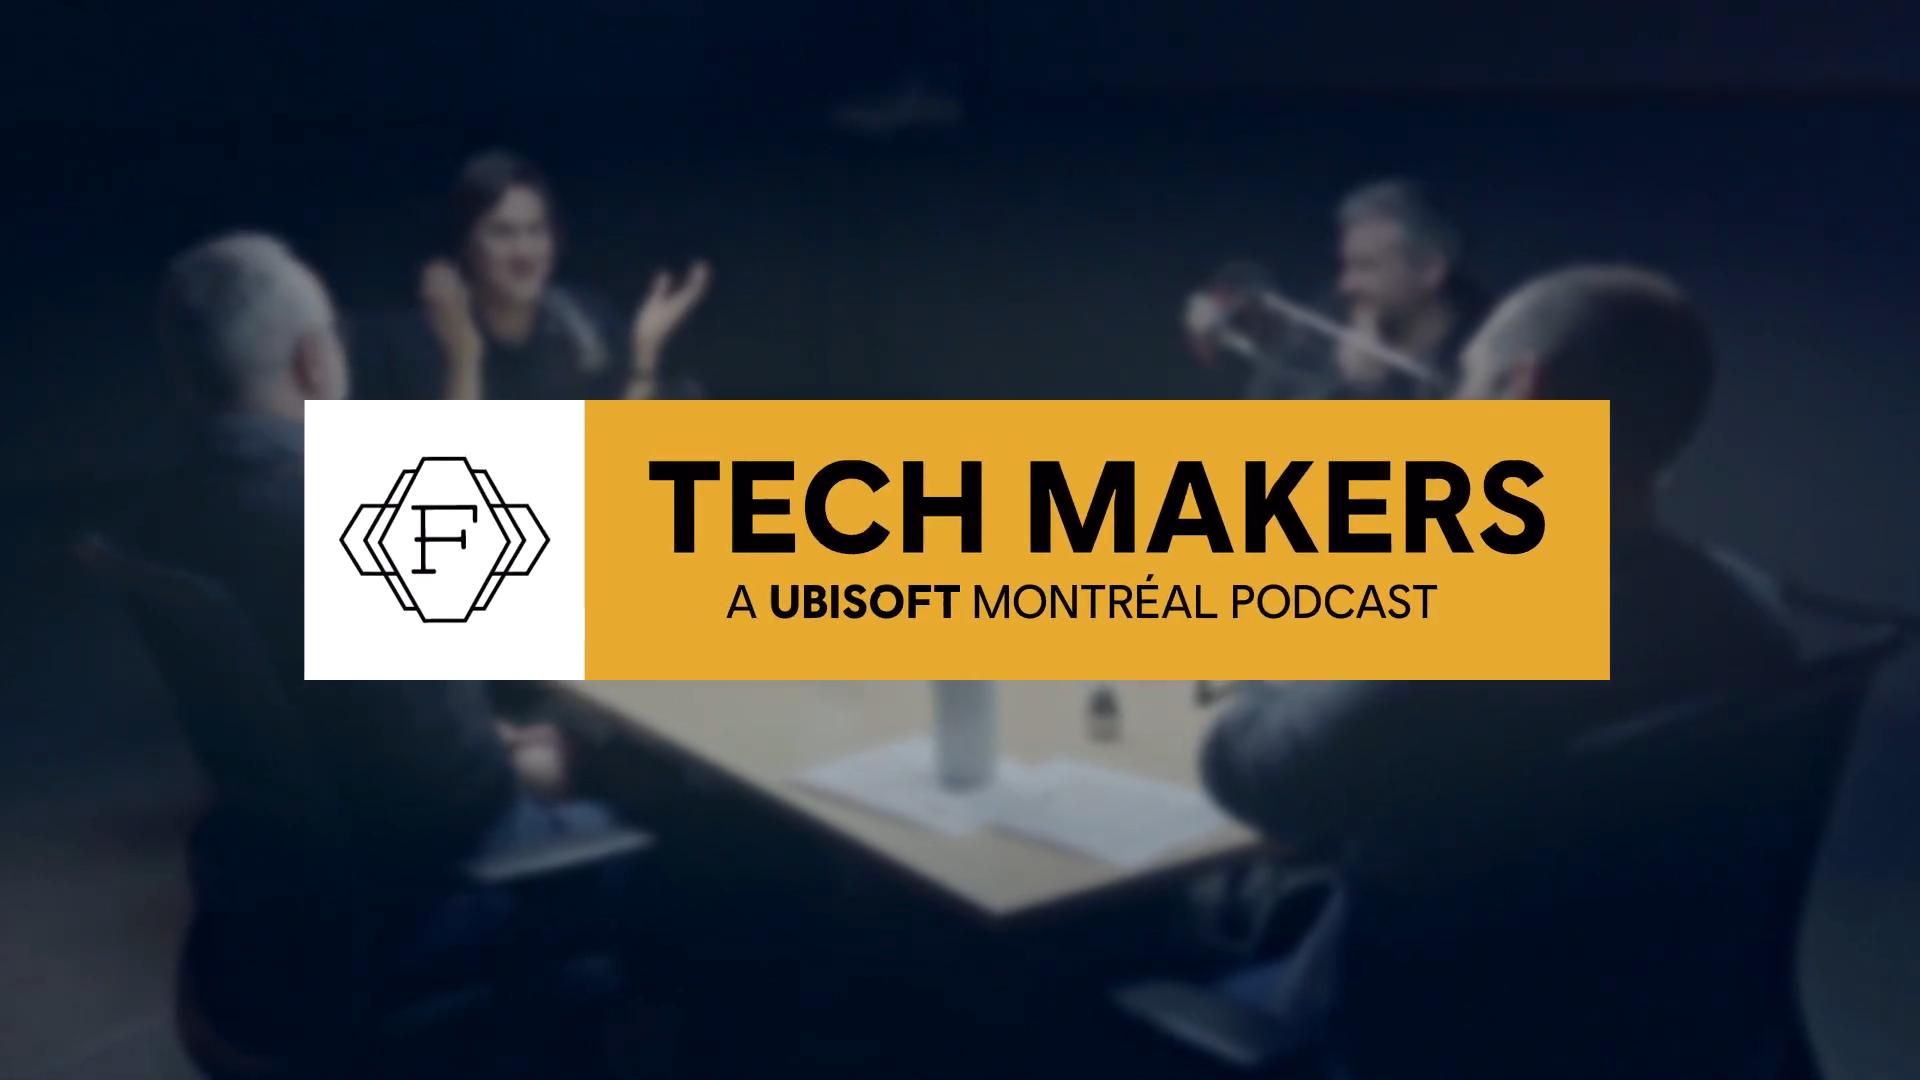 育碧推出播客Tech Makers，揭秘遊戲行業創新先鋒技術